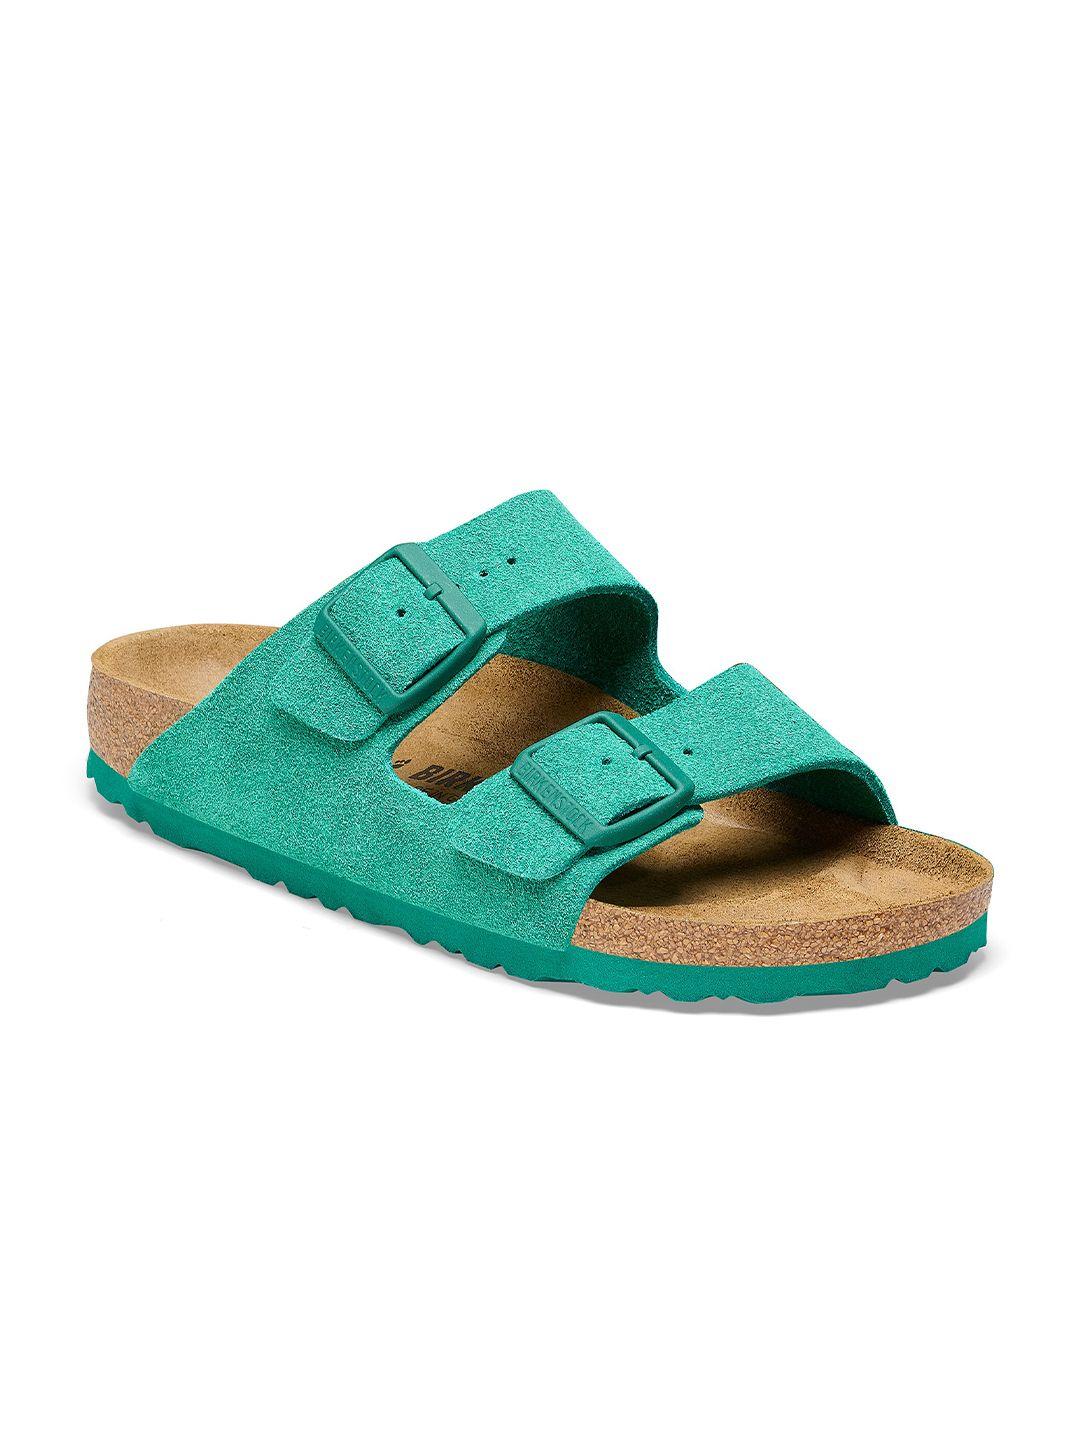 birkenstock unisex arizona suede leather regular width two-strap comfort sandals